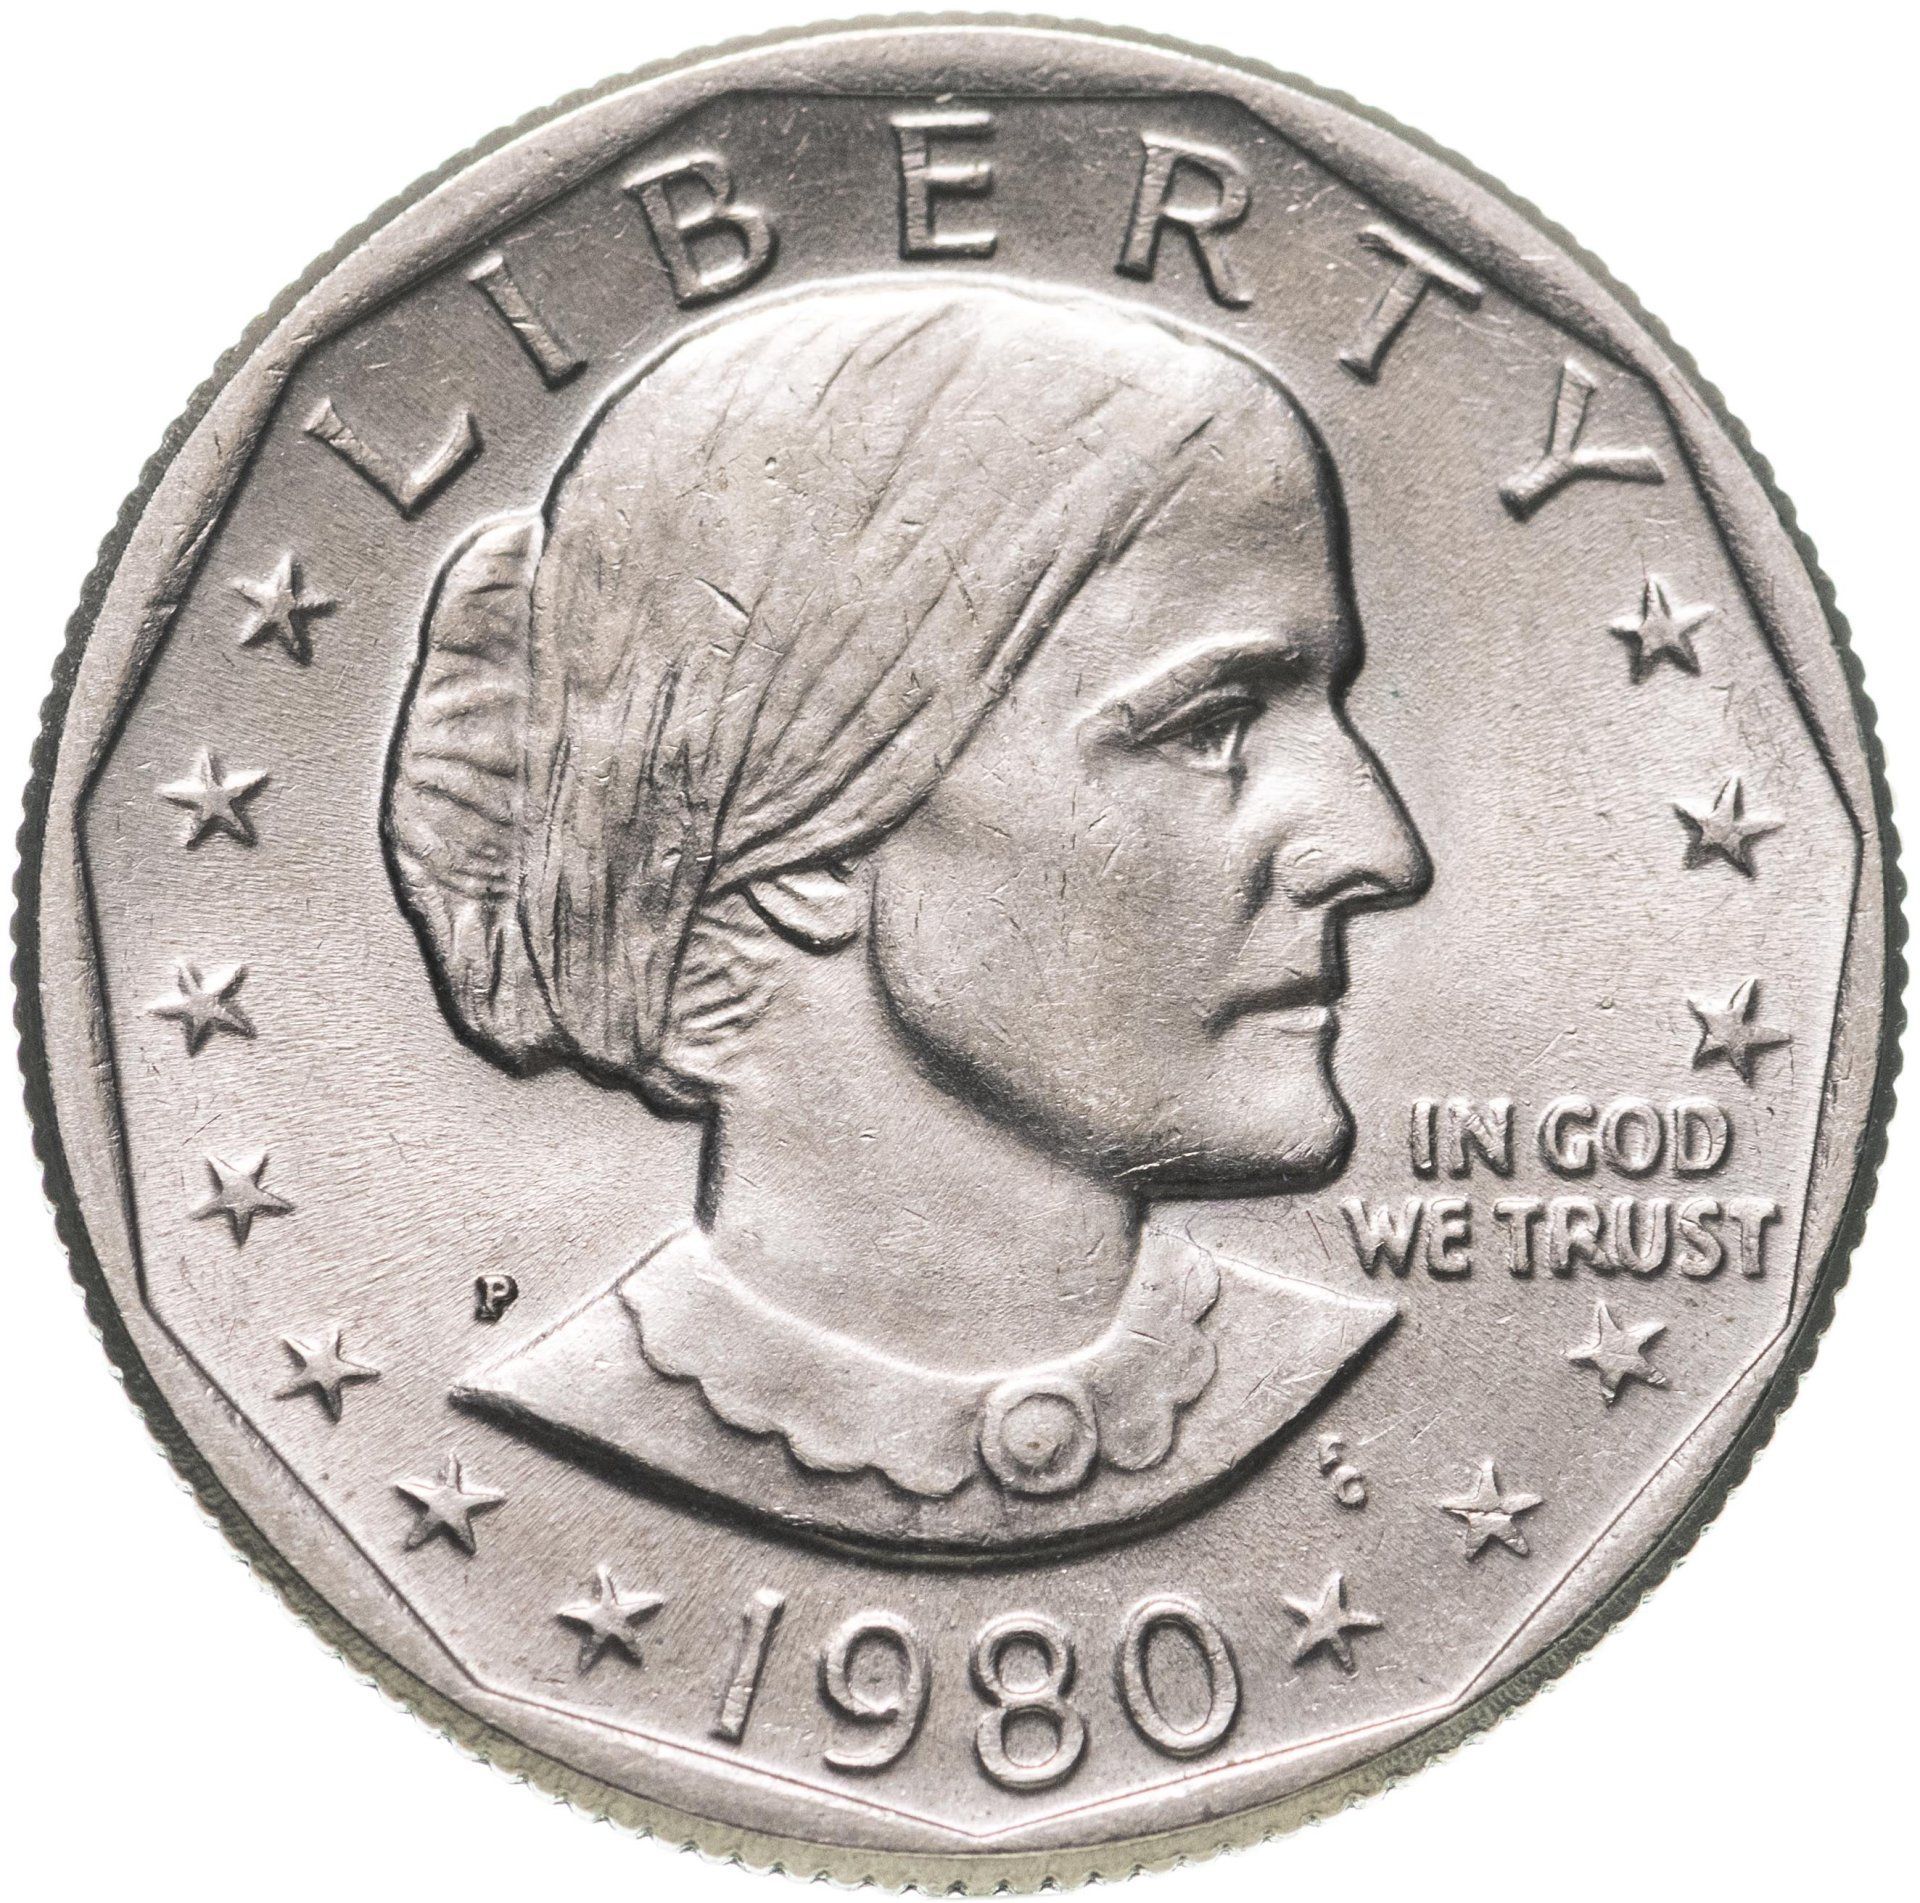 Купить монеты доллары сша. 1 Доллар 1979 Сьюзен Энтони p. 1 Доллар США 1979. США доллар Сьюзен Энтони. One Dollar 1979 года монета.